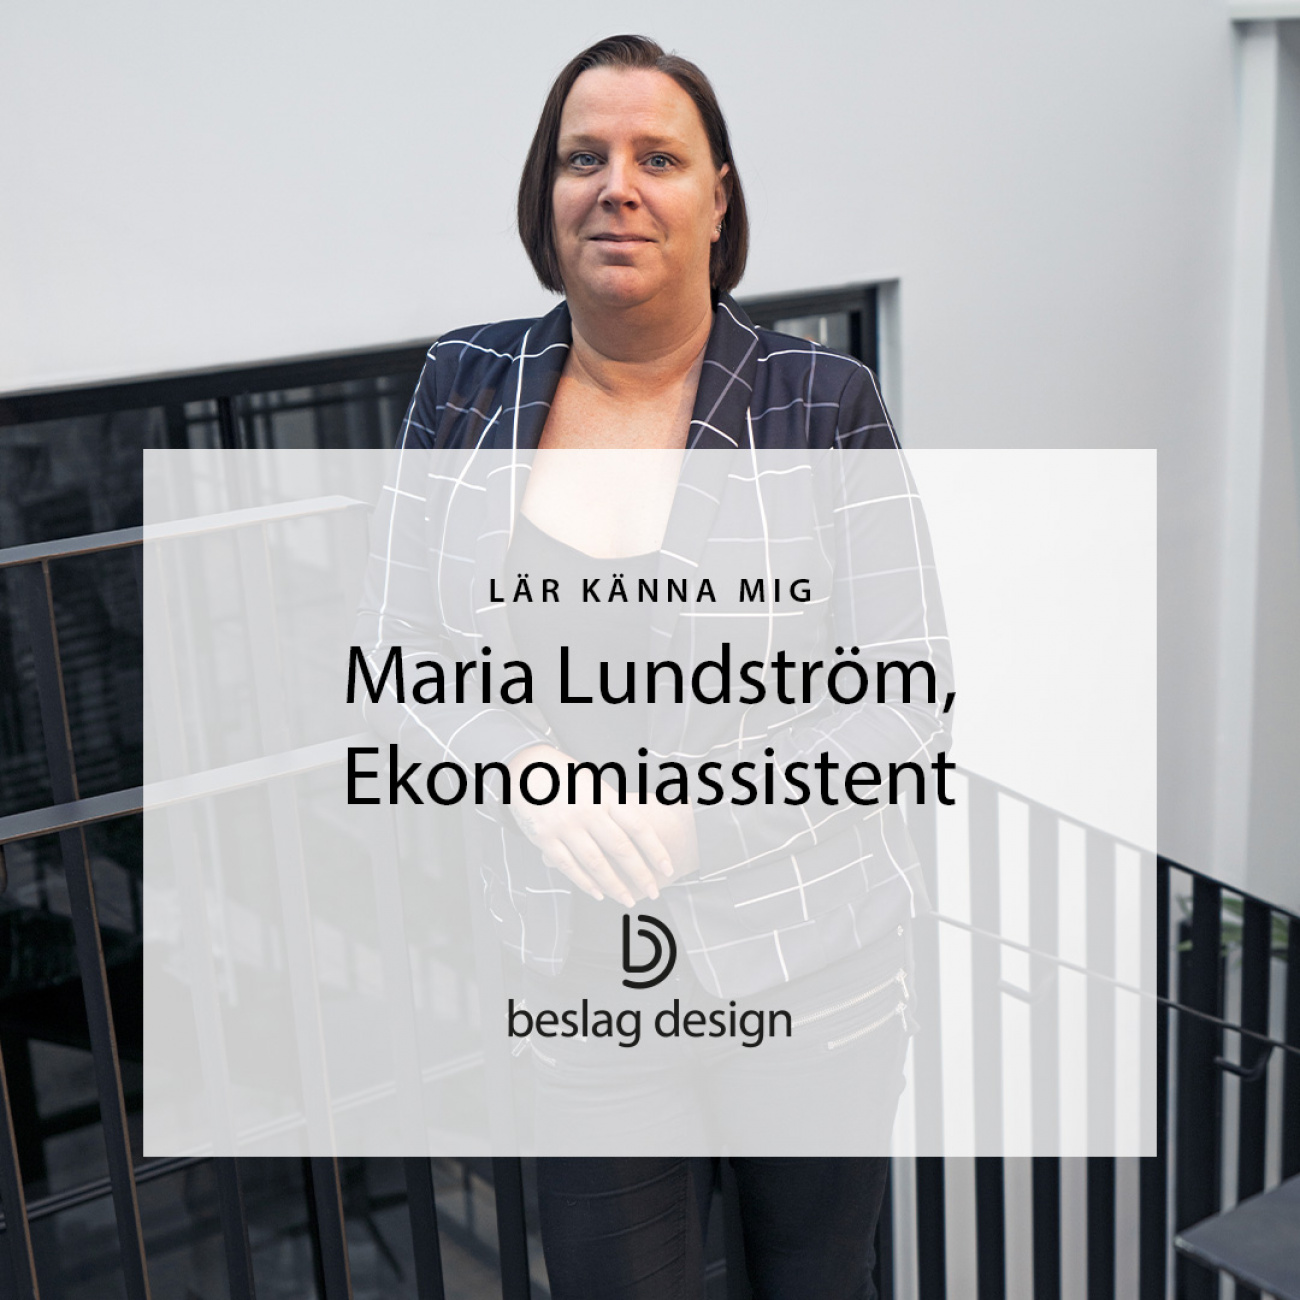 Lär känna mig: Maria Lundström, Ekonomiassistent